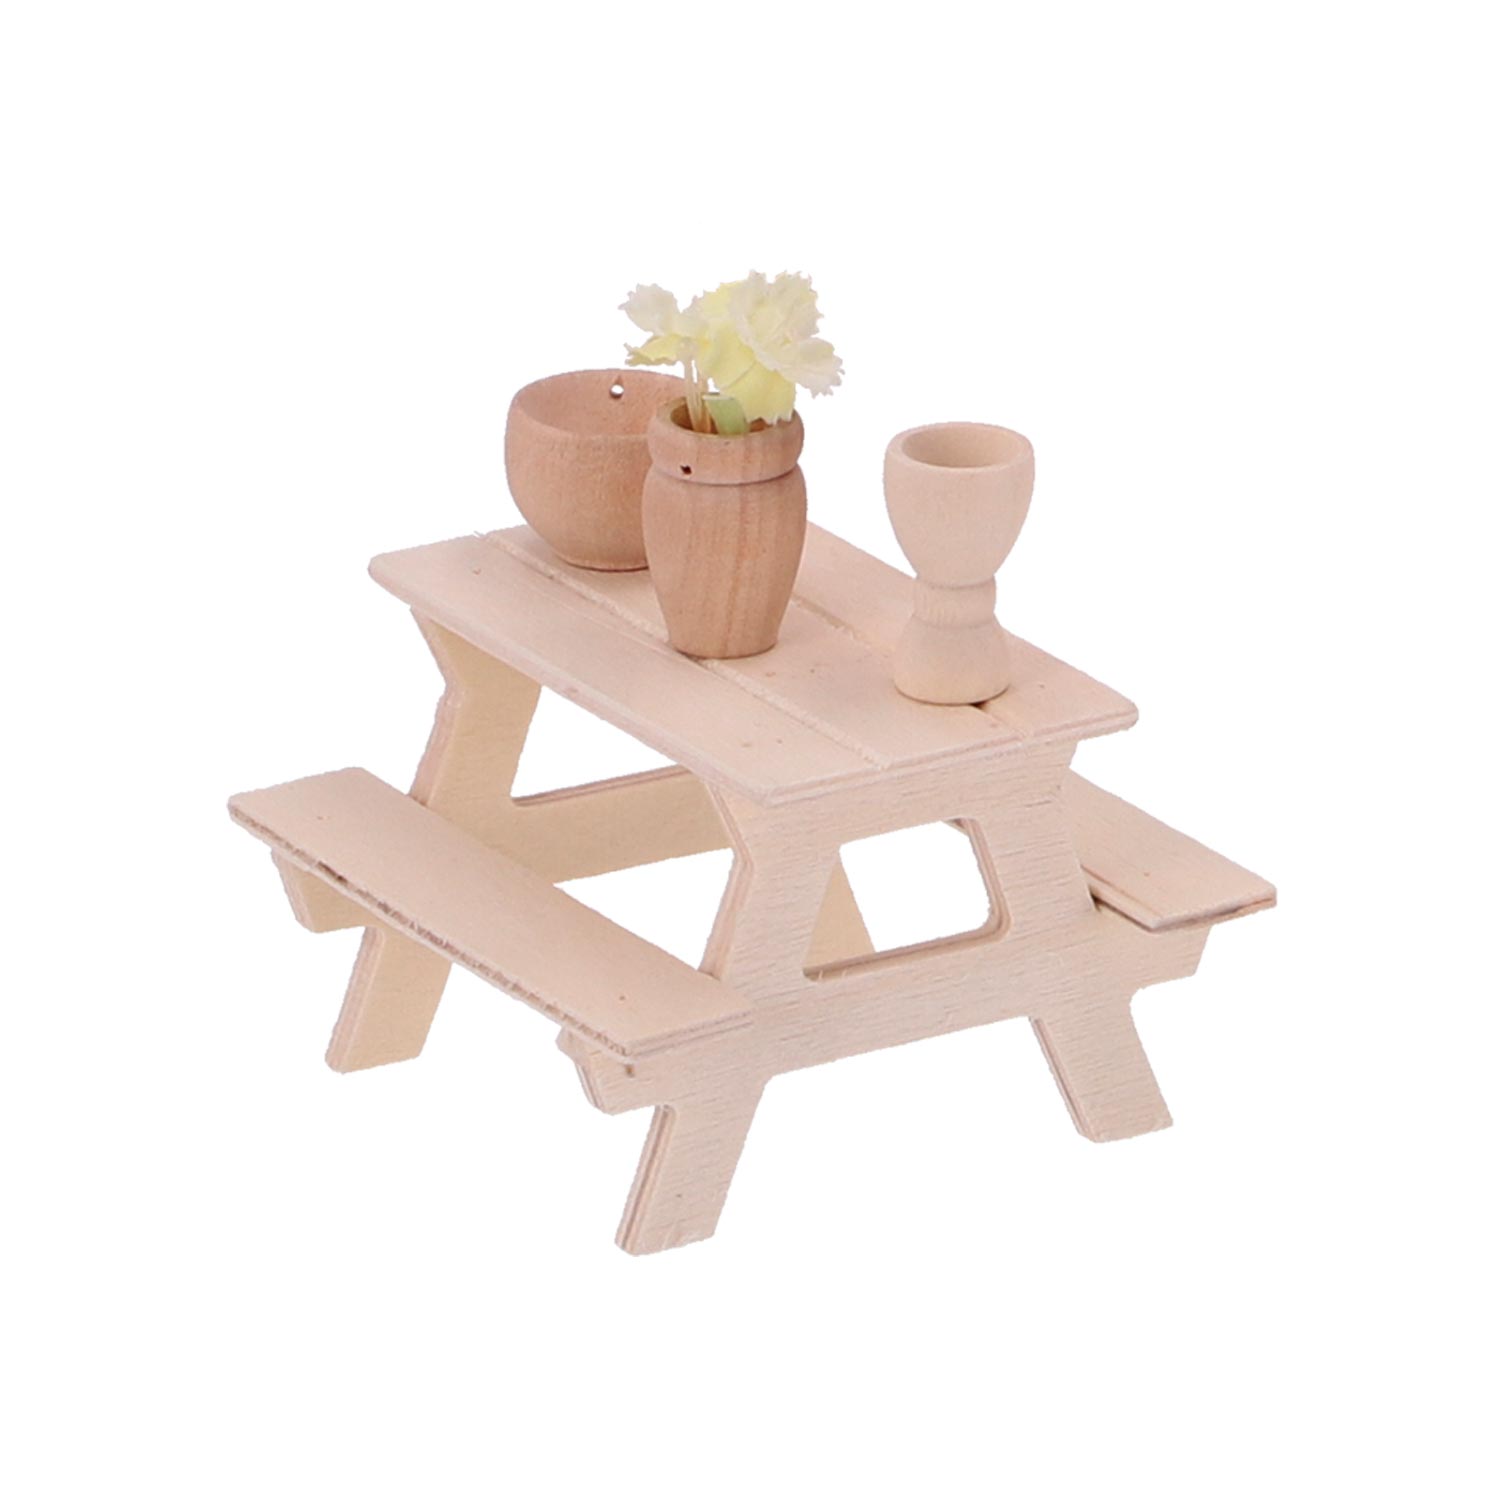 Miniatur Picknick-Tisch mit Bank aus Holz, H 5,5 x B 8 x T 8 cm (ohne Deko)